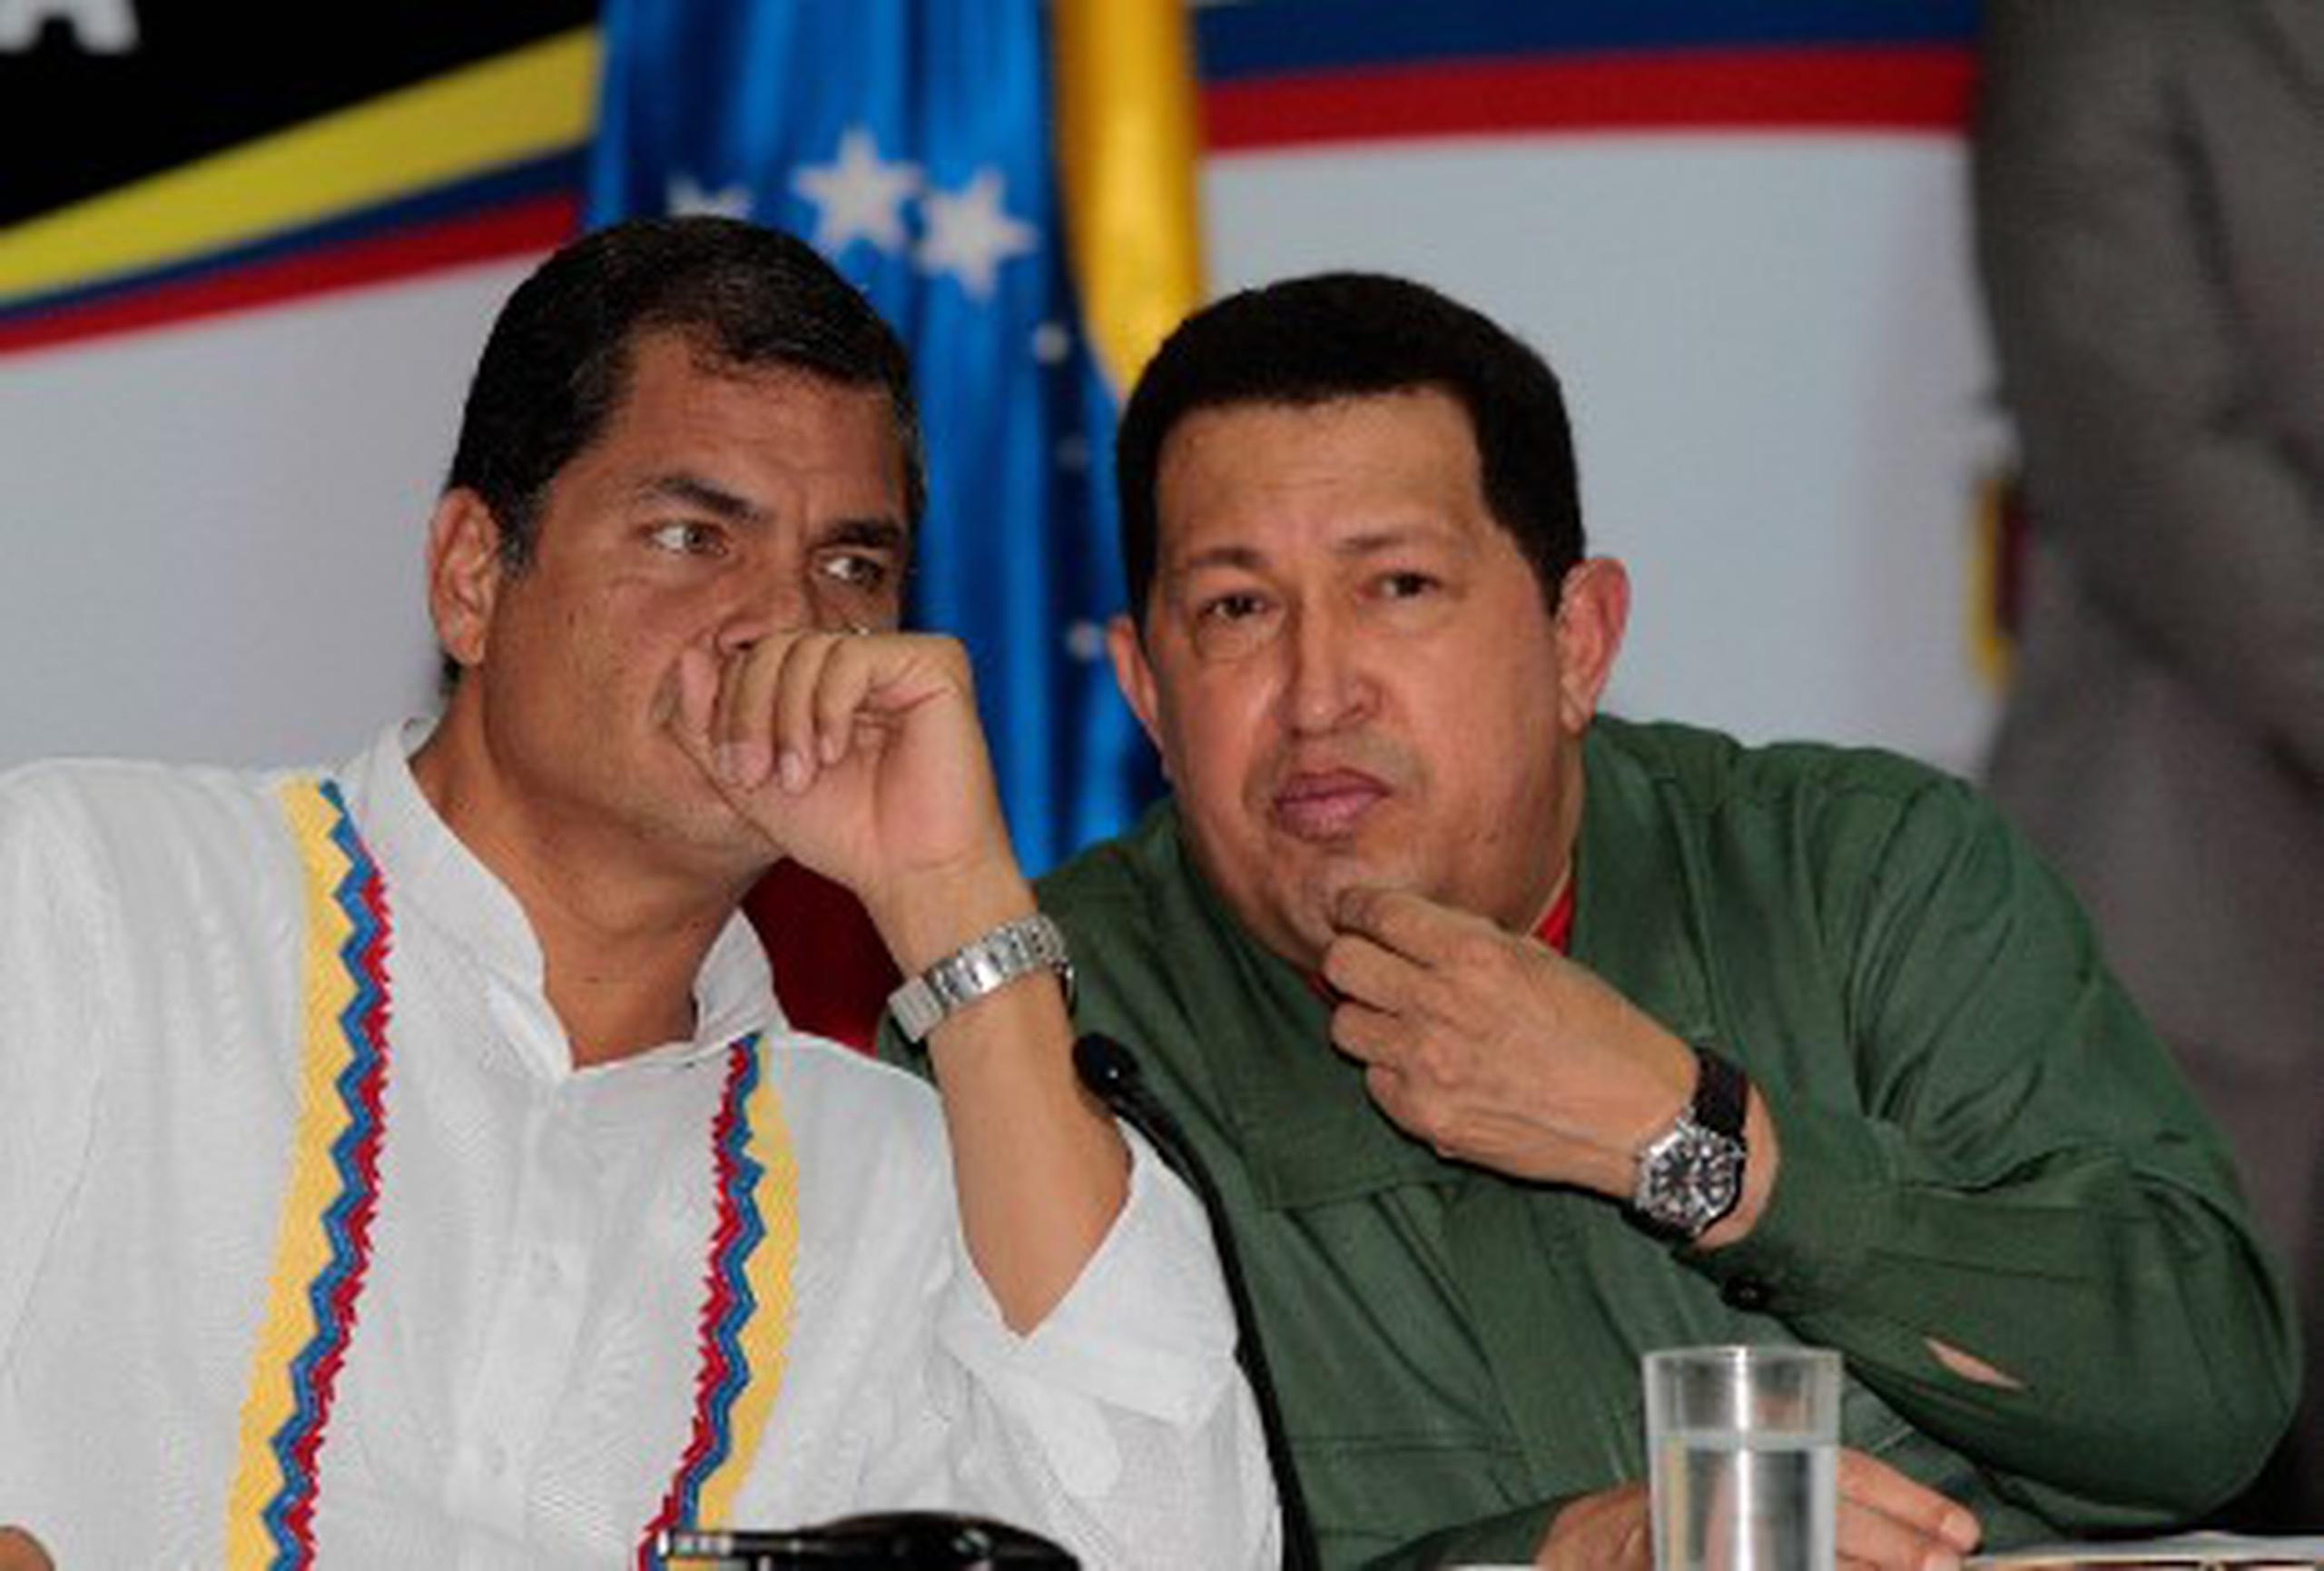 Debido a la campaña electoral en Ecuador, Correa no viajó a Caracas para asistir a los actos organizados para respaldar a Chávez. (Archivo)